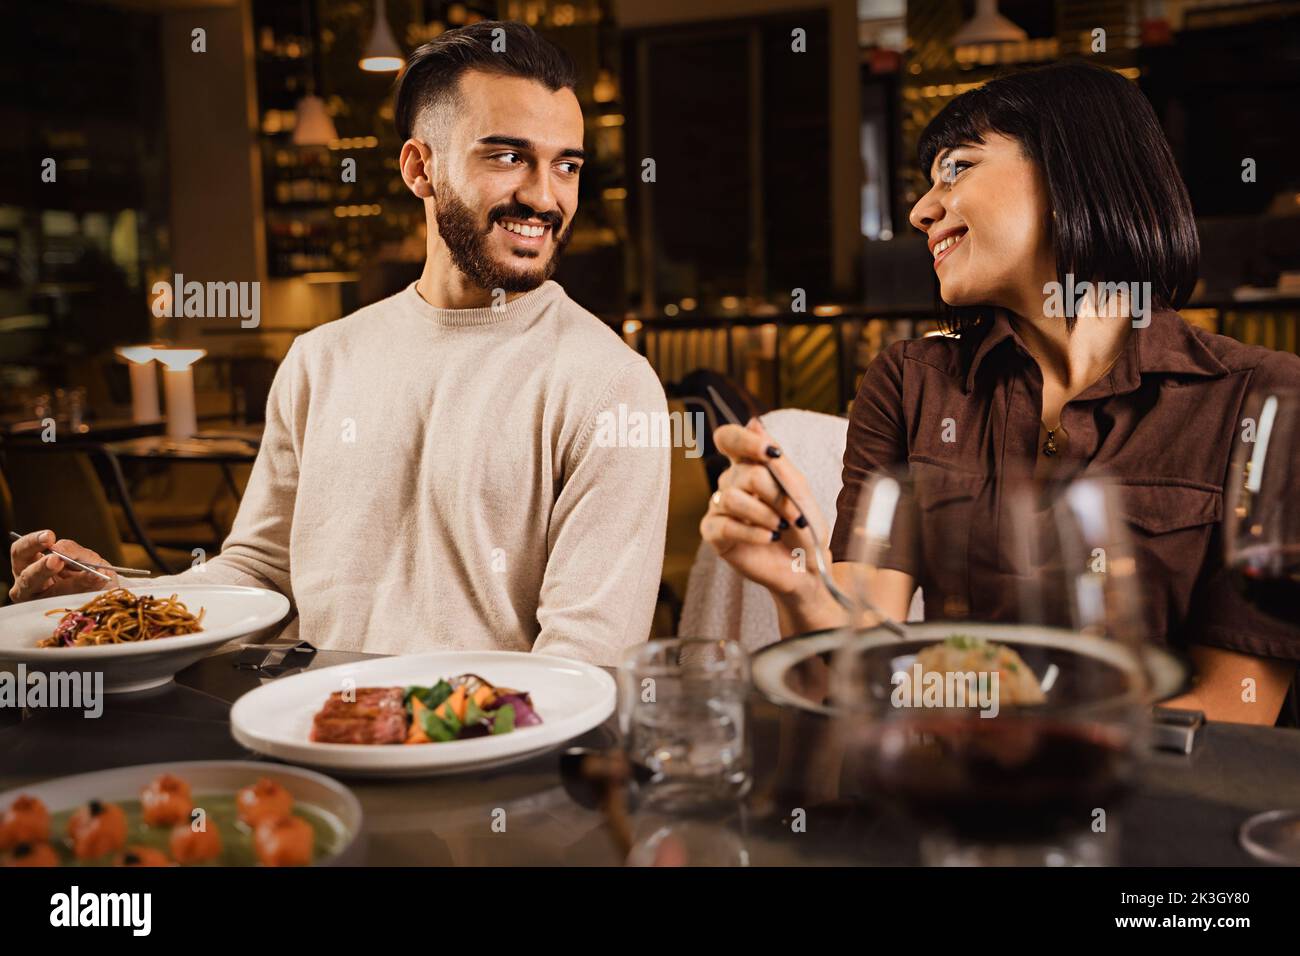 Ein glückliches Paar, das im Restaurant zu Abend gegessen hat und sich gegenseitig beobachtet hat - ein Paar, das sich an einem Date mit den Augen in Verbindung gesetzt hat und abends im Luxusrestaurant gegessen hat Stockfoto